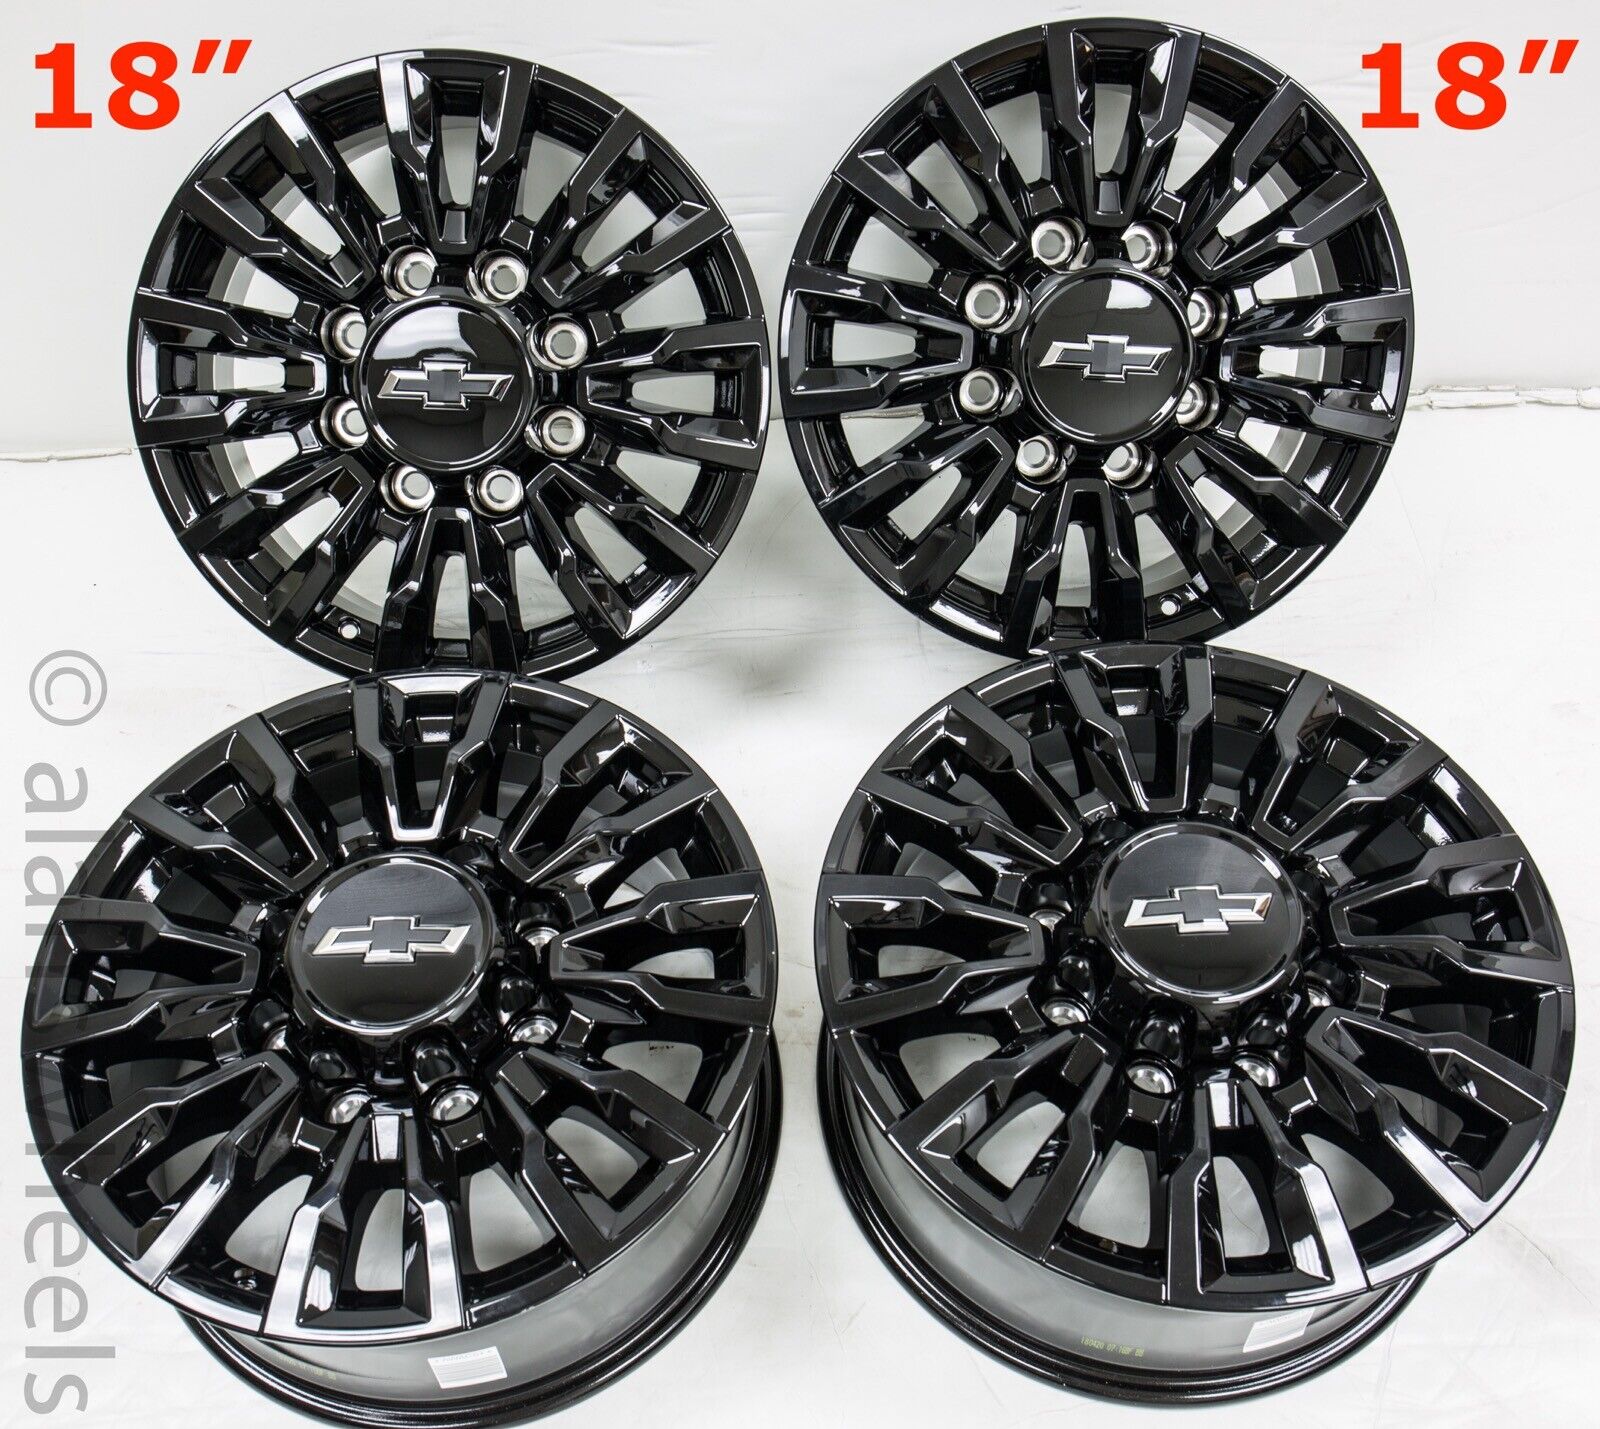 4 New 18” Chevy Silverado 2500 3500 HD OEM Gloss Black 8 Lug Wheels Rims